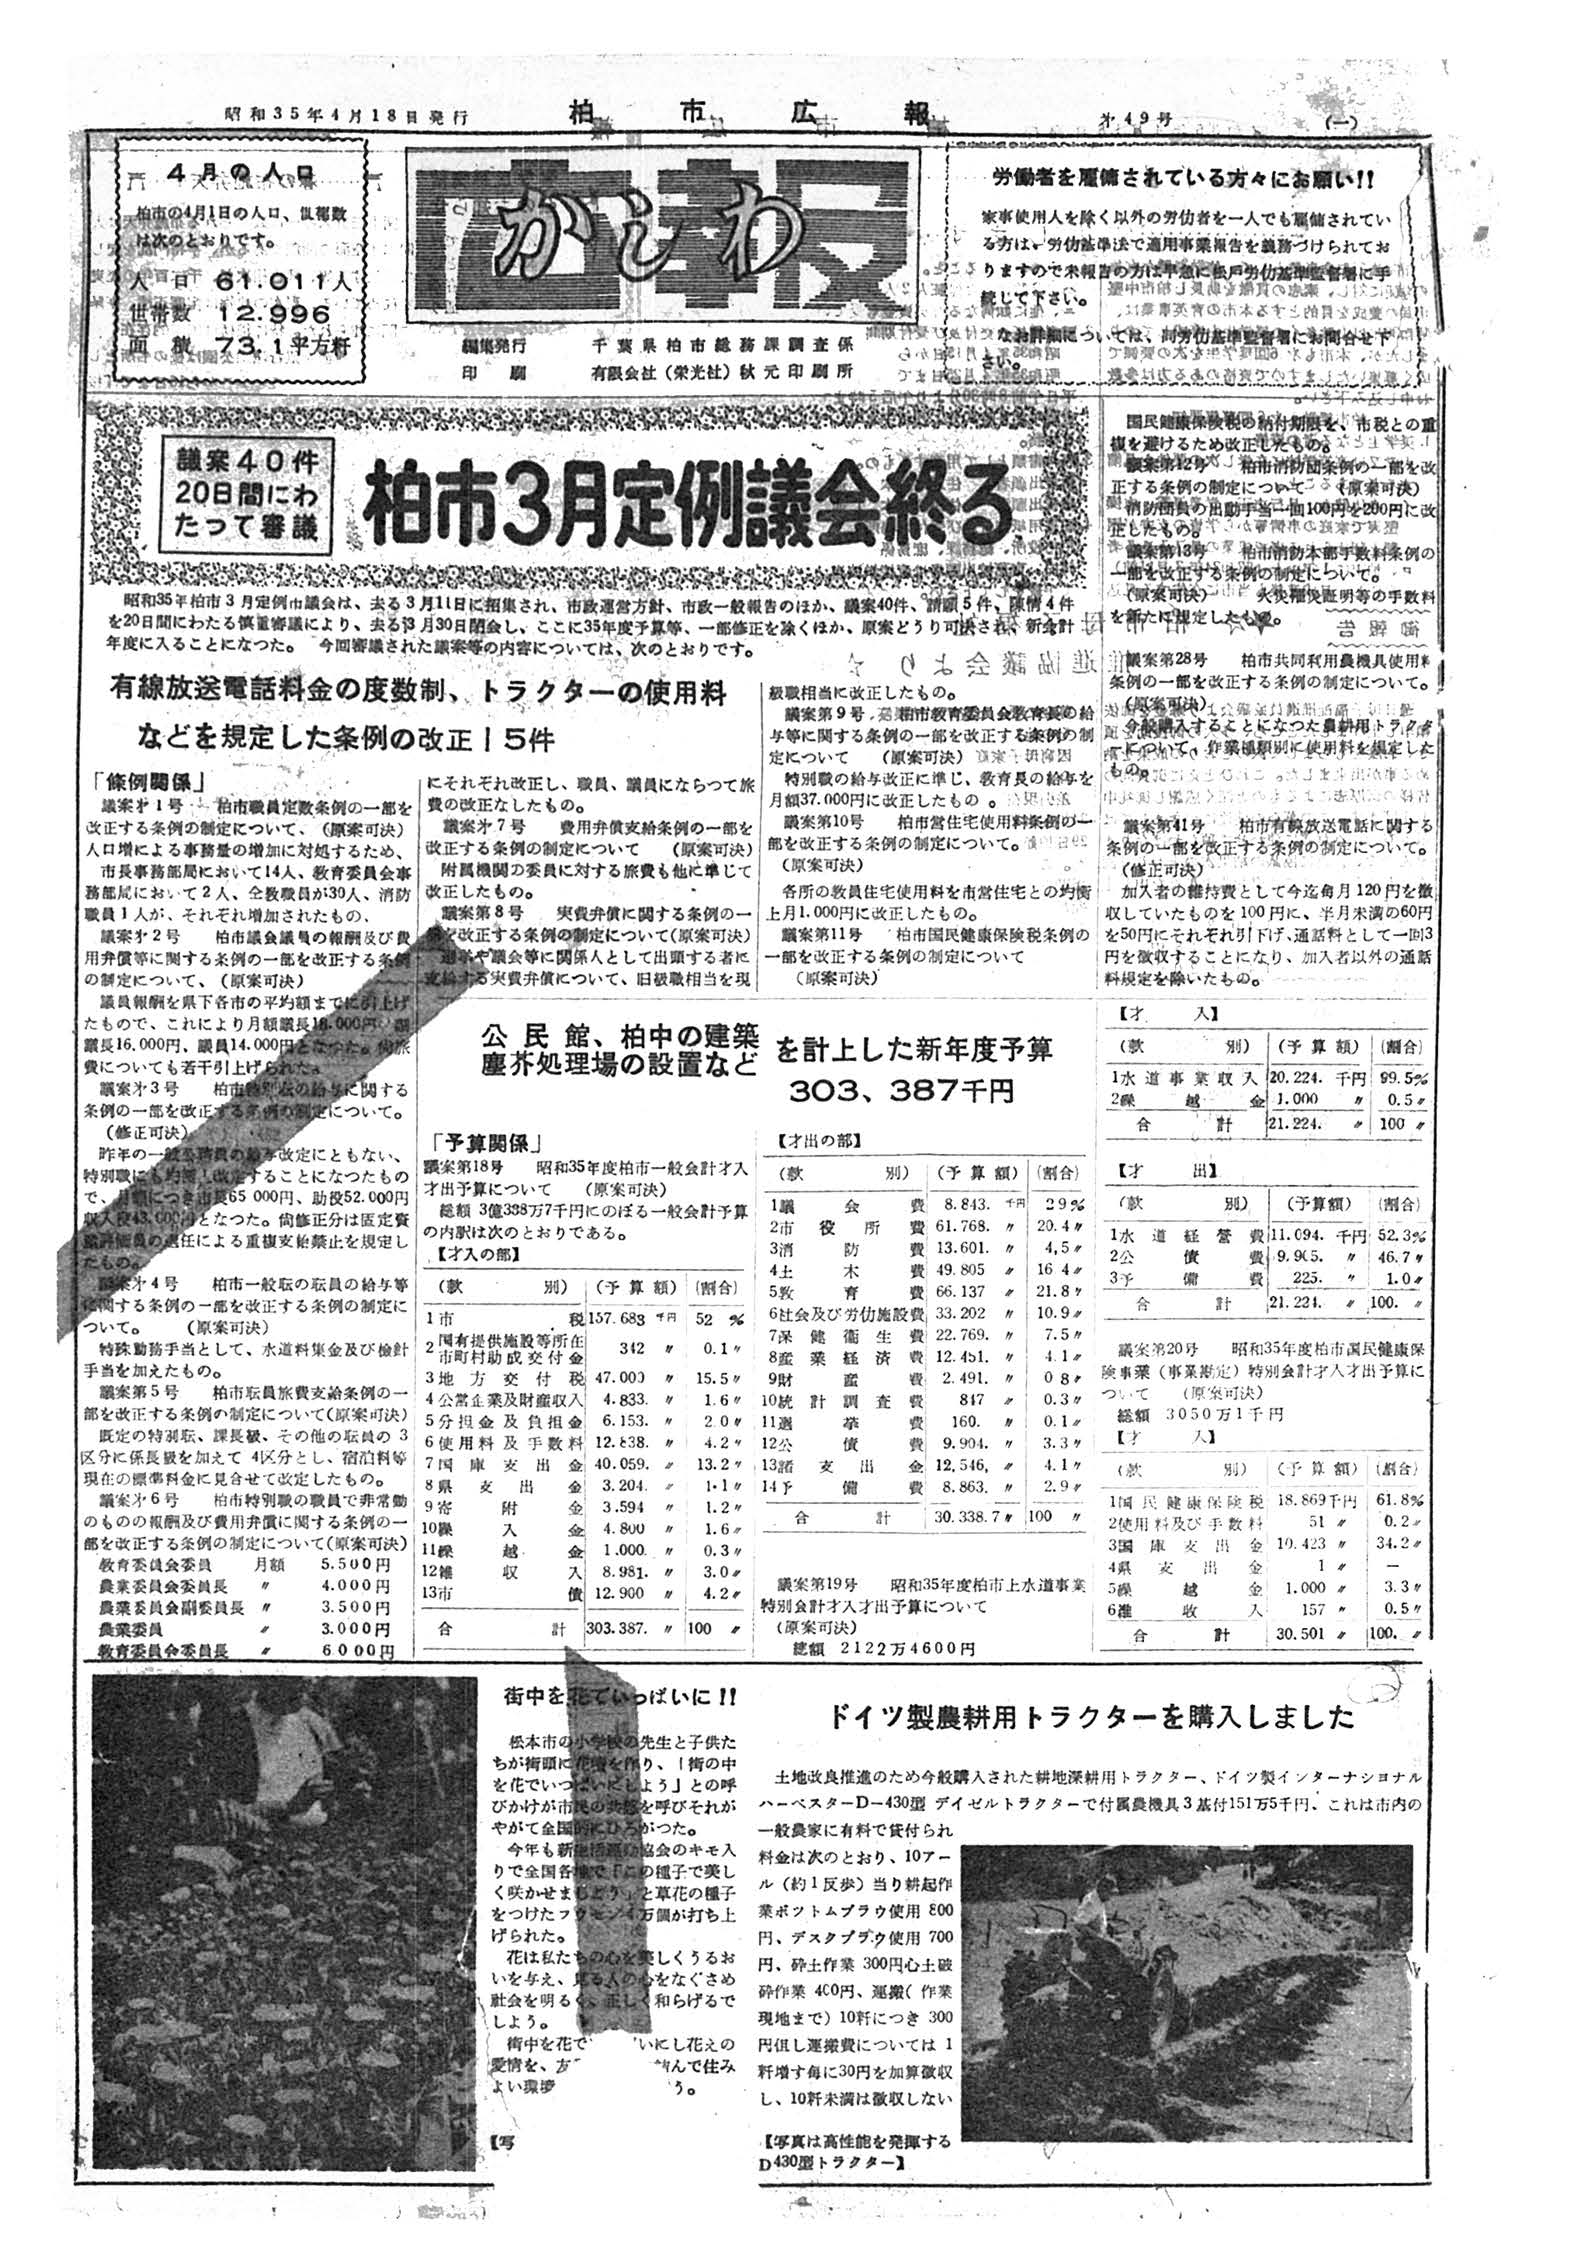 広報かしわ　昭和35年4月18日発行　49号